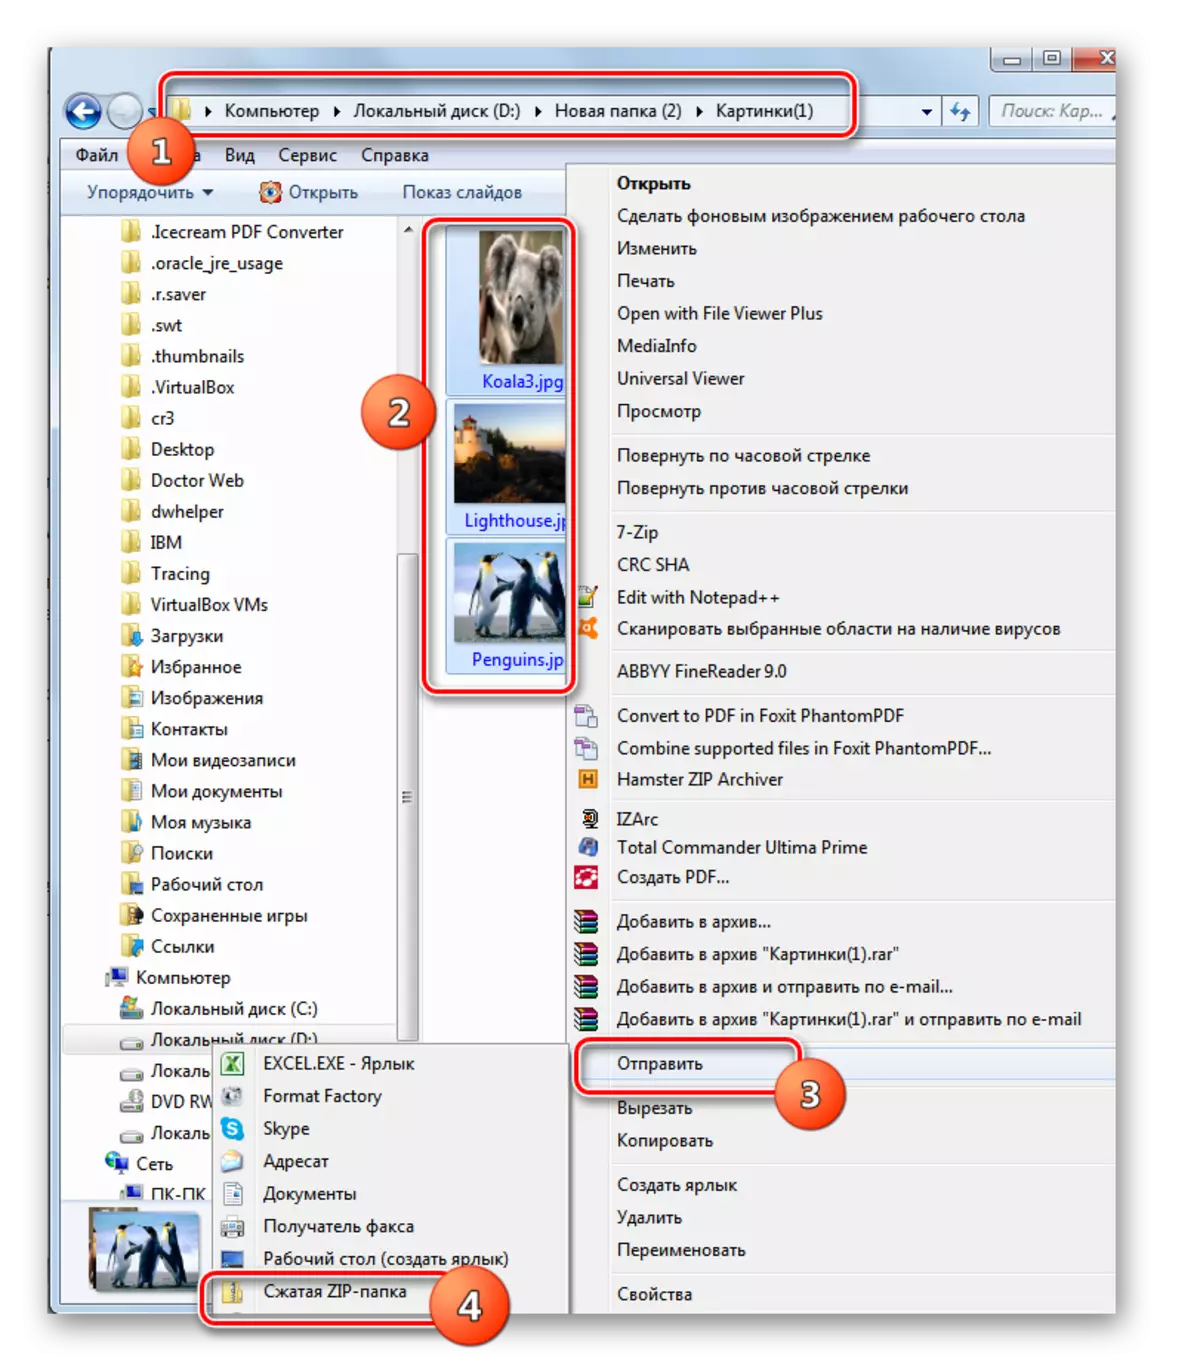 انتقل إلى إنشاء أرشيف مضغوط من خلال قائمة سياق الموصل في نظام التشغيل Windows 7